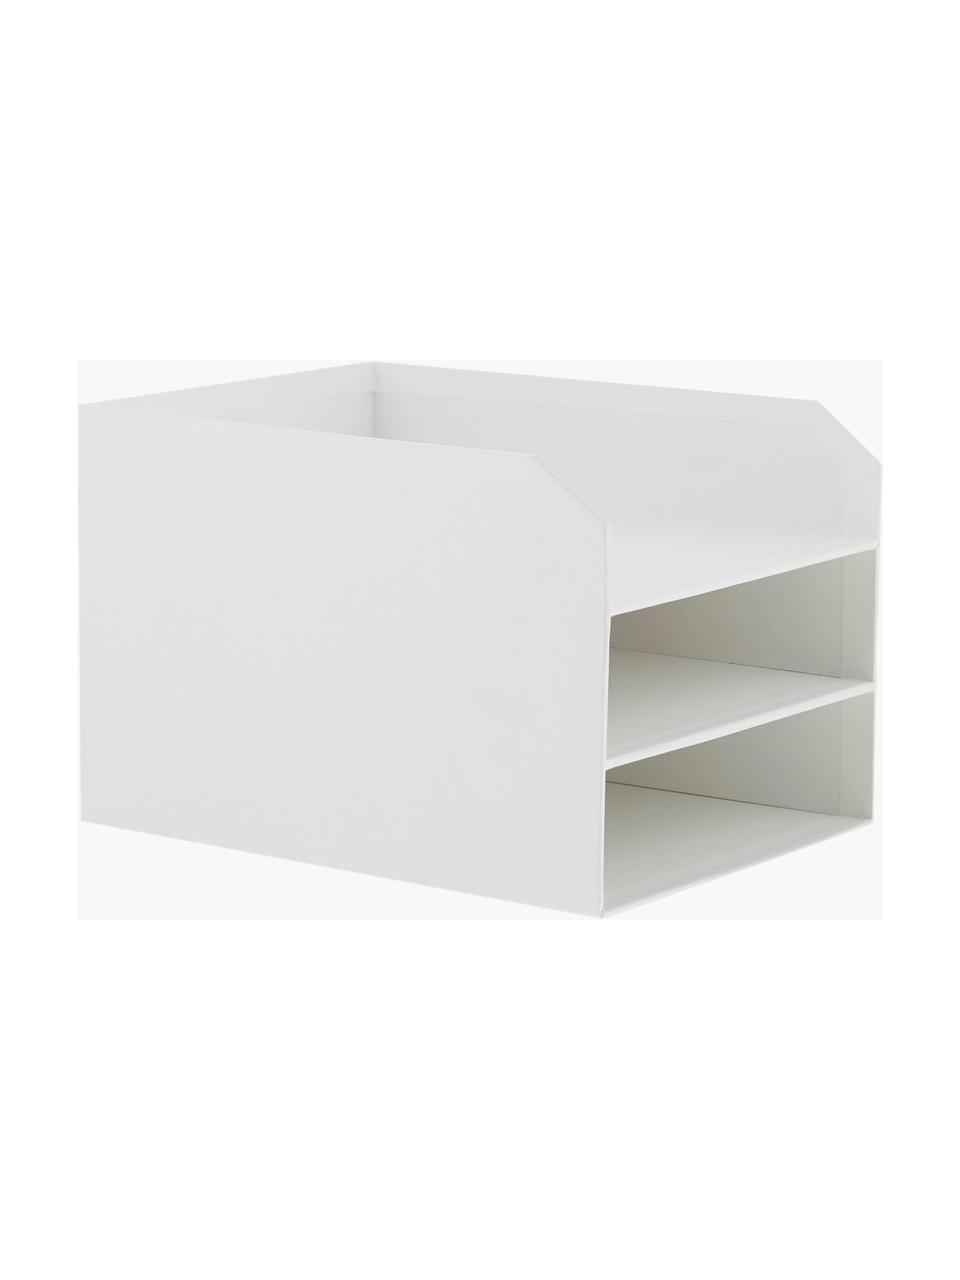 Dokumentenablage Trey, Fester, laminierter Karton, Weiß, B 23 x T 32 cm